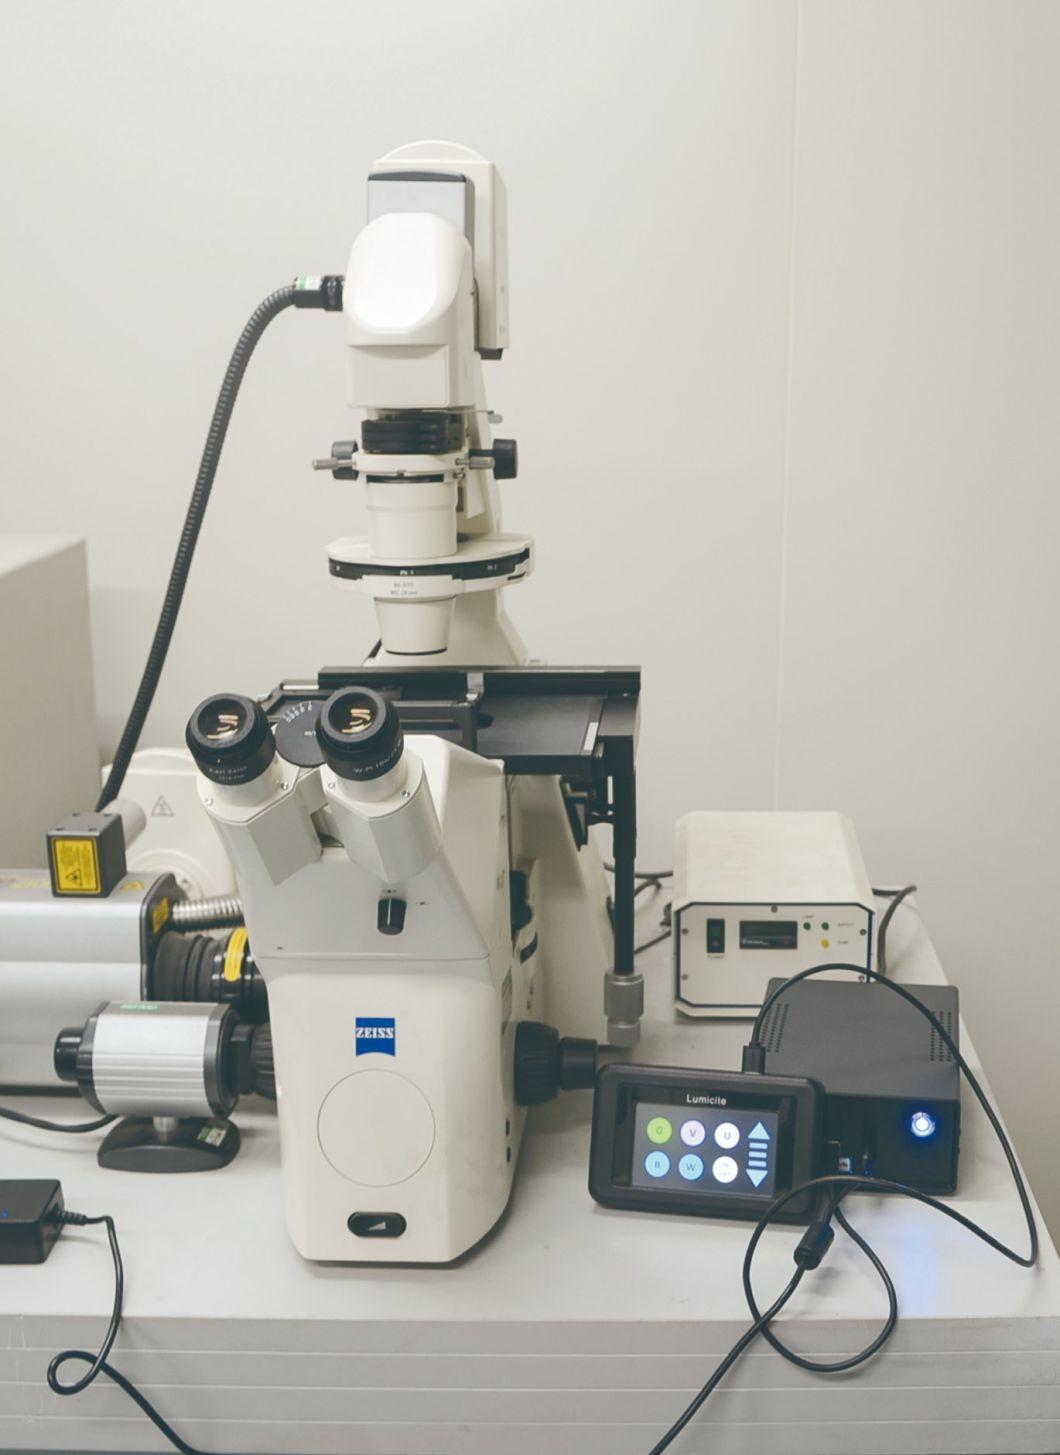 LED Illuminator for Microscope